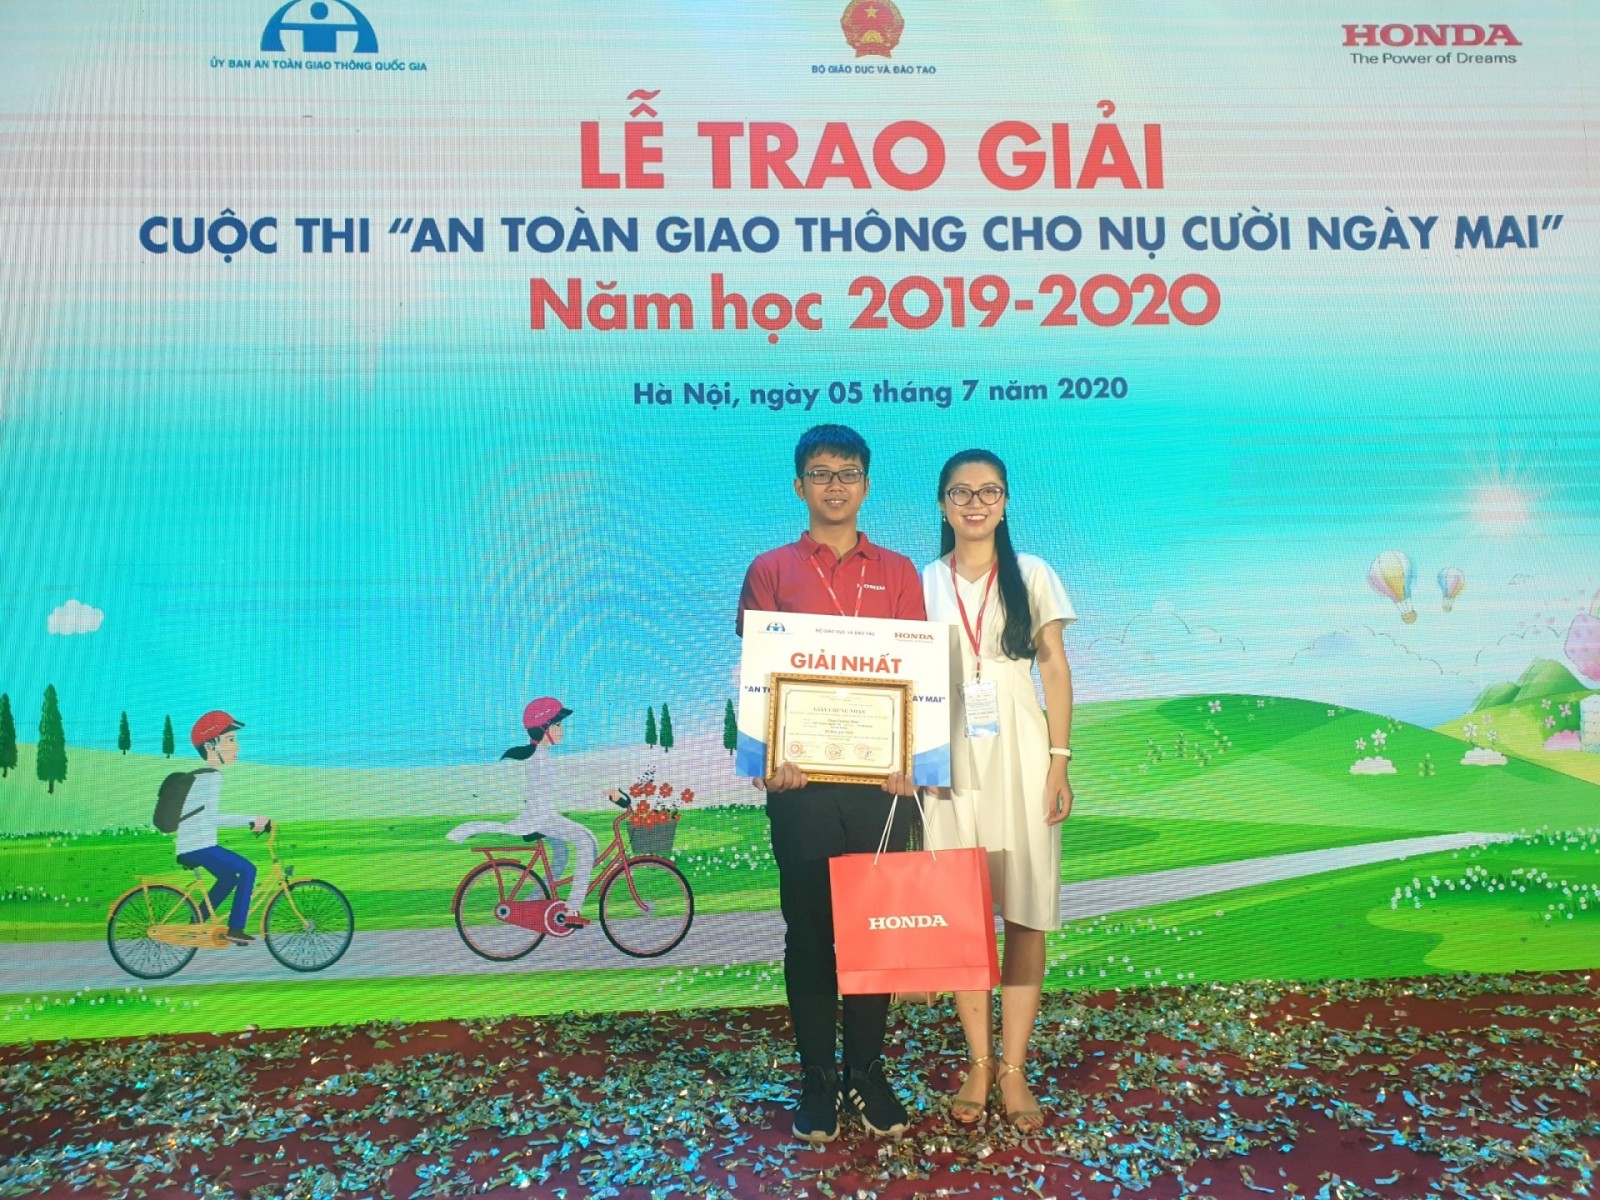 Chuyên Nguyễn Trãi đạt giải nhất cuộc thi “An toàn giao thông cho nụ cười ngày mai” cấp quốc gia